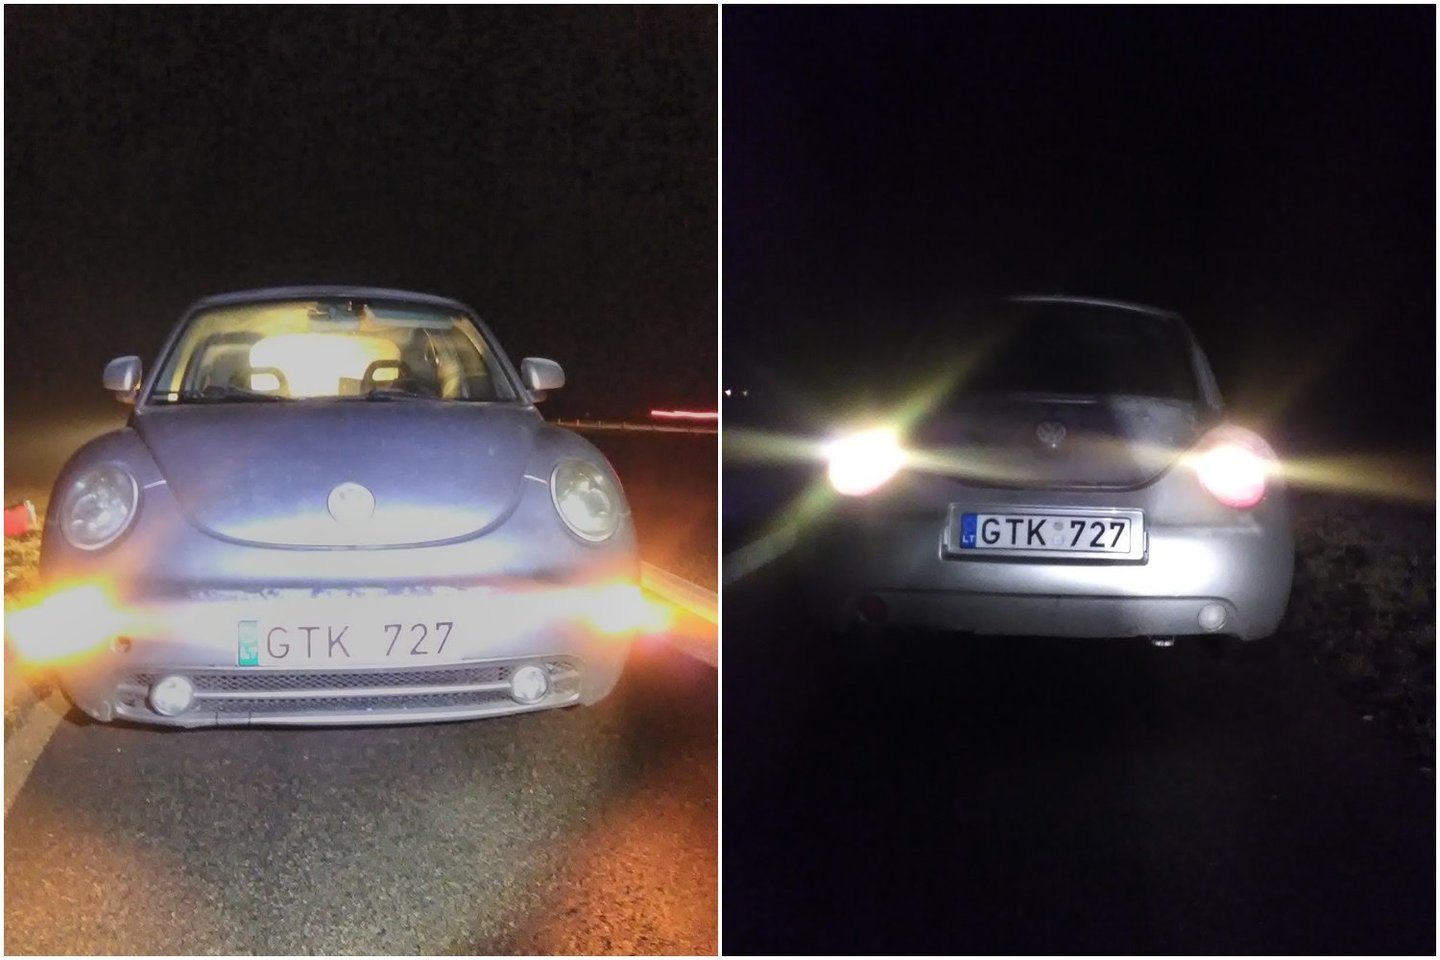  Policija prašo pagalbos: gal matėte, kaip autostradoje buvo apvogtas šis automobilis?<br> Šiaulių apskrities VPK nuotr.